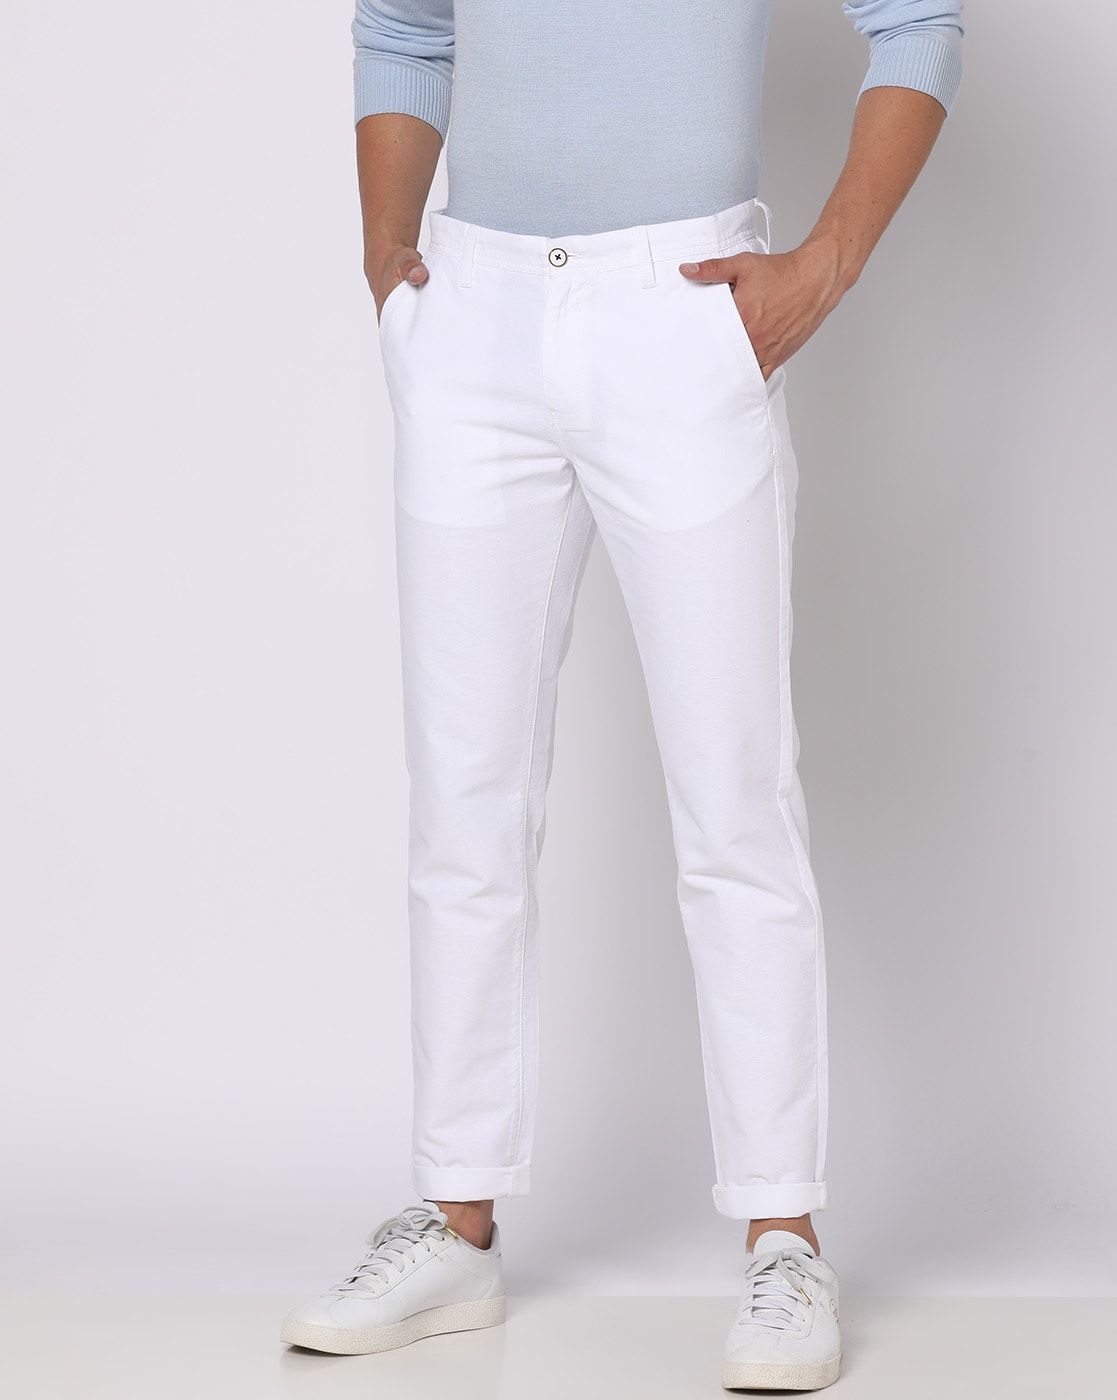 The Best White Trousers For Men  WhatsHot Delhi Ncr